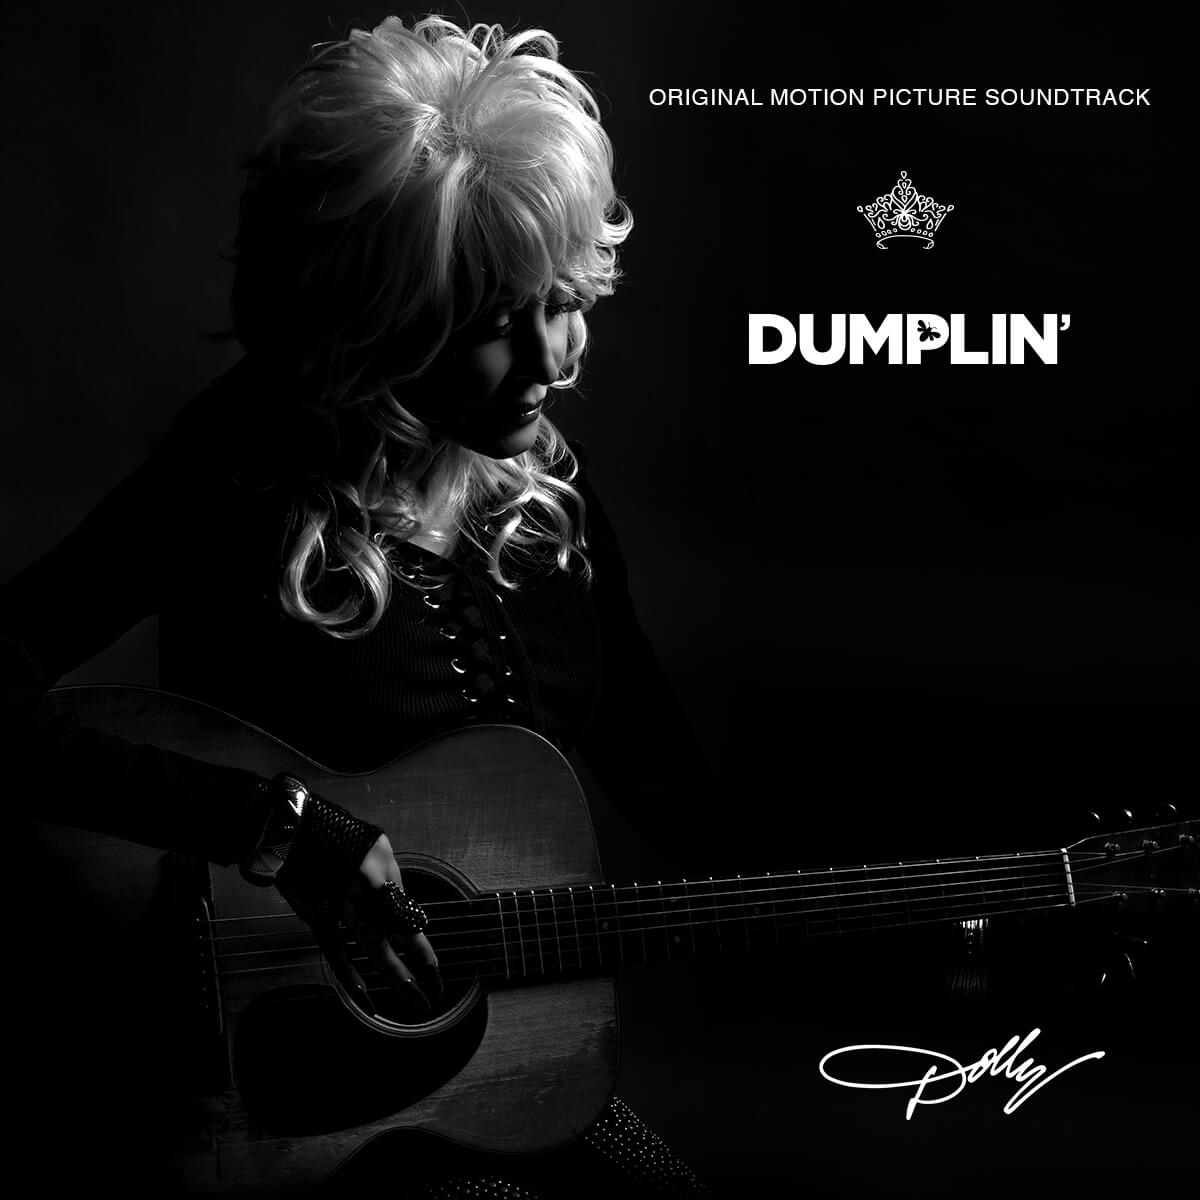 Dolly Parton - Dumplin’ Original Motion Picture Soundtrack